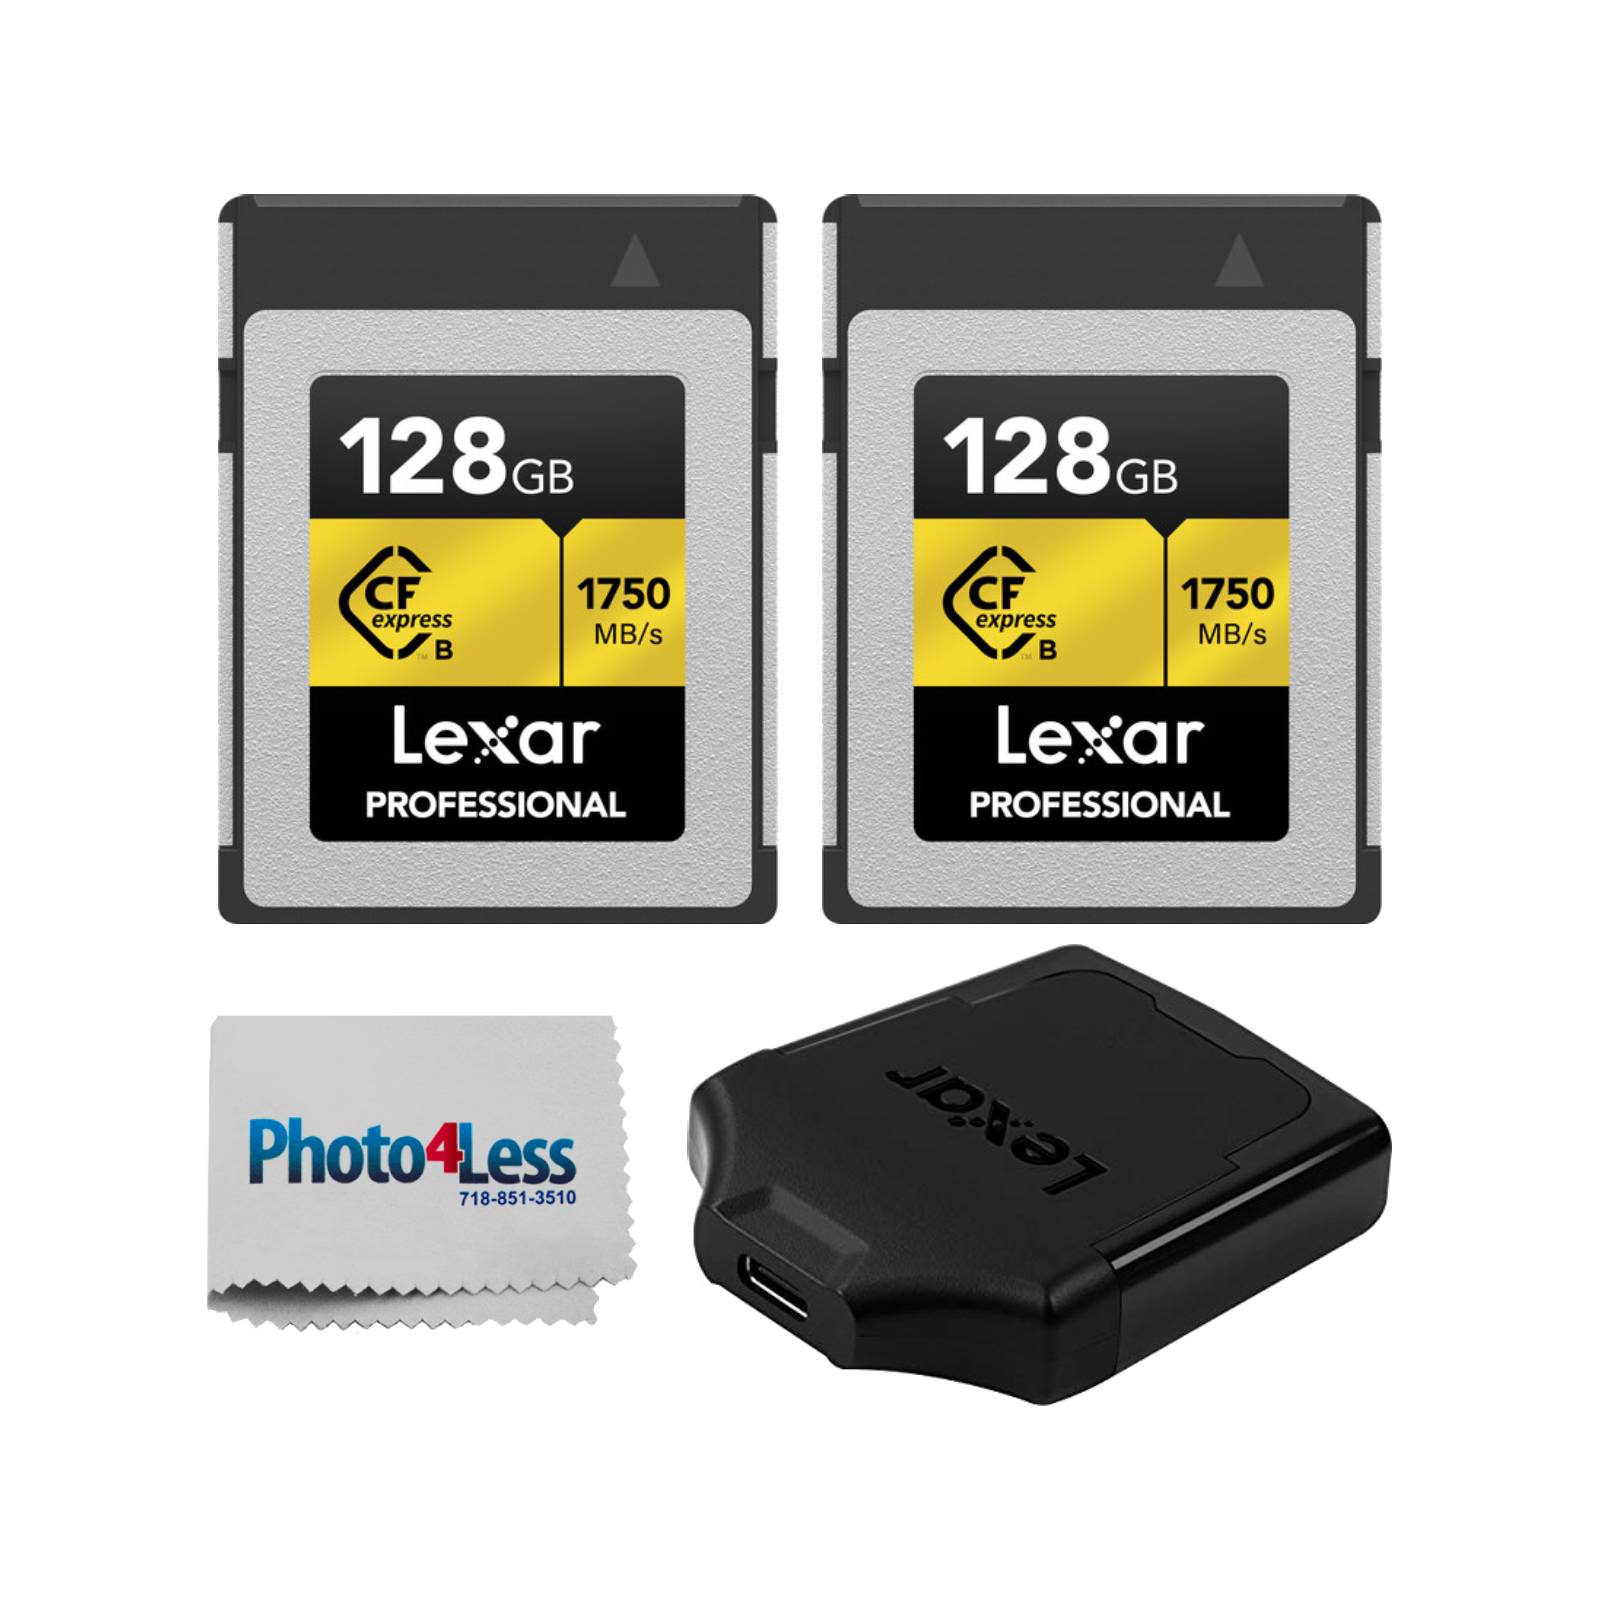 Lexar Professional 128GB CF